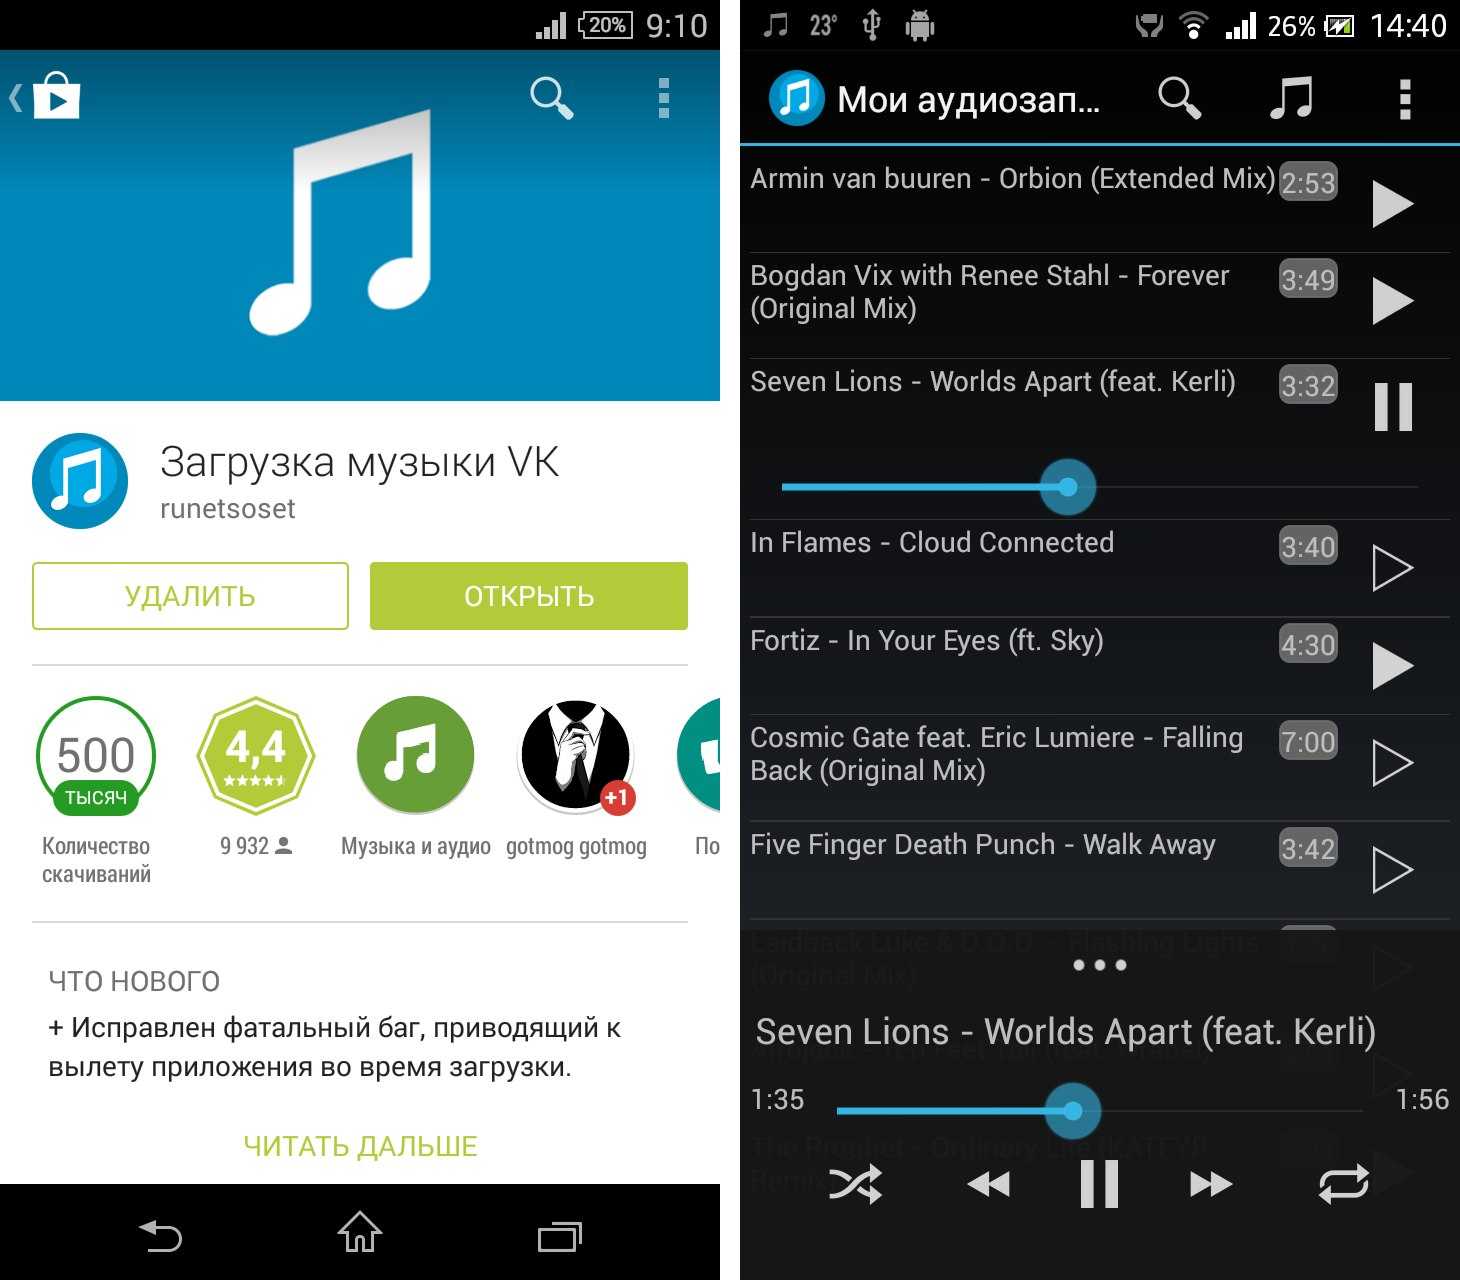 Подключить музыку без интернета. Загрузка приложения. Приложение для музыки. Музыкальное приложение для андроид. Какие нужны приложения для скачивания музыки.